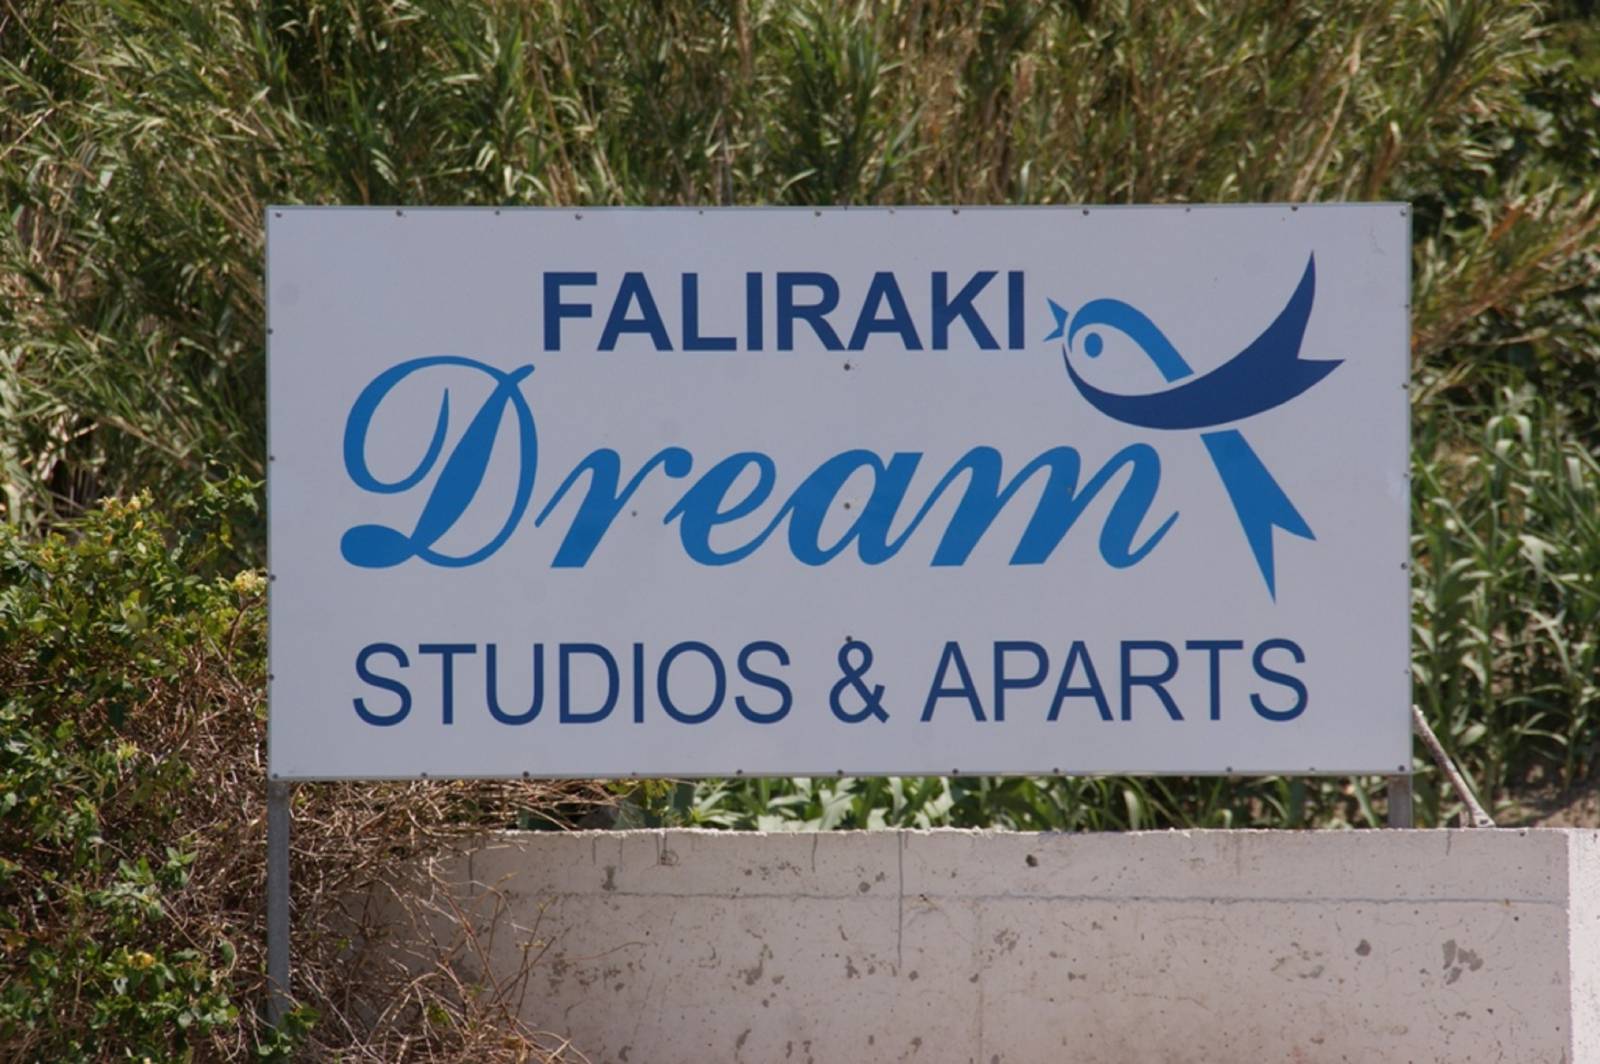 FALIRAKI DREAM